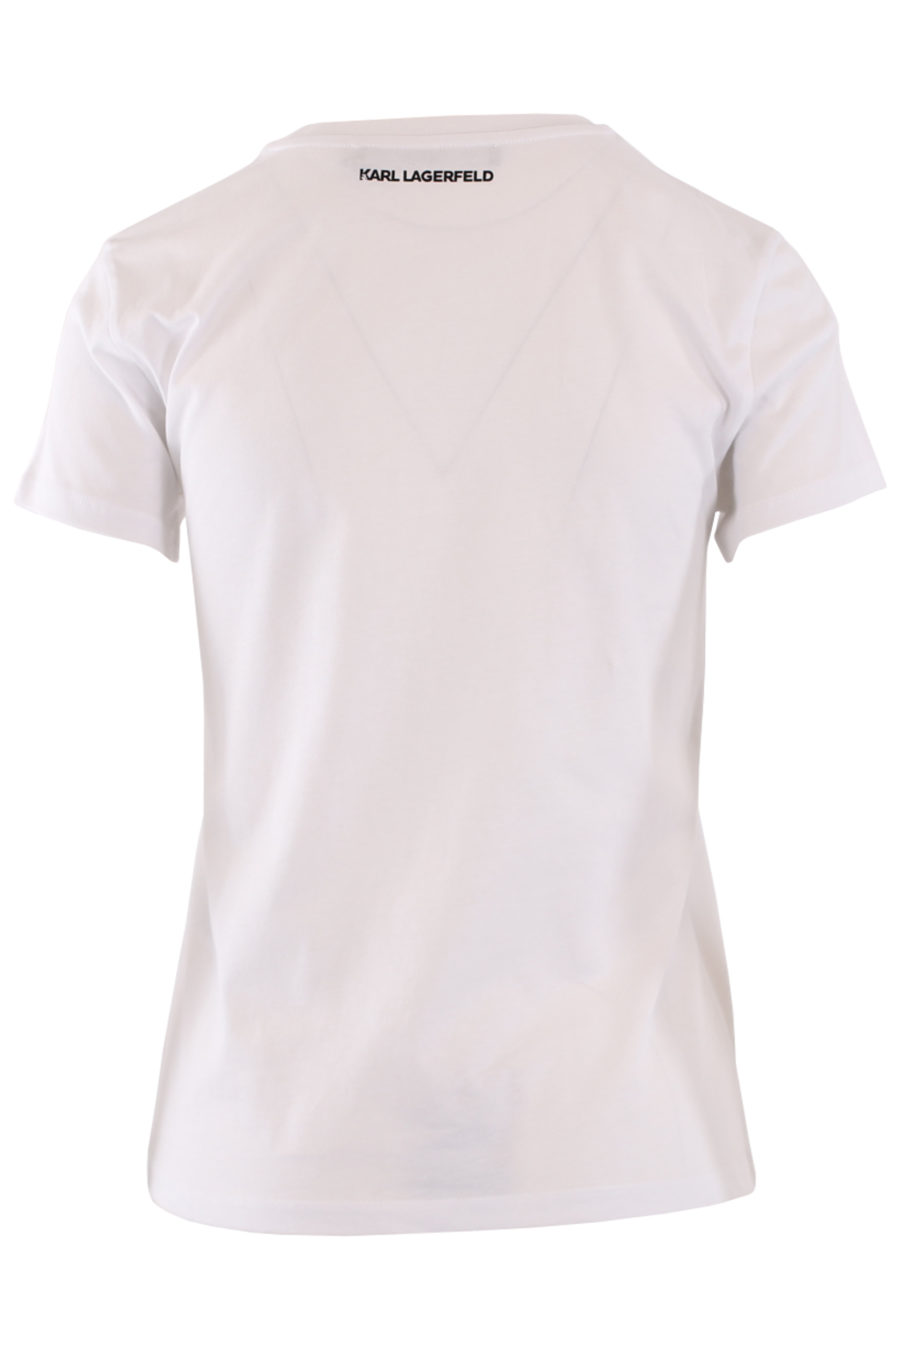 Camiseta blanca con logo pequeño en strass - IMG 8987